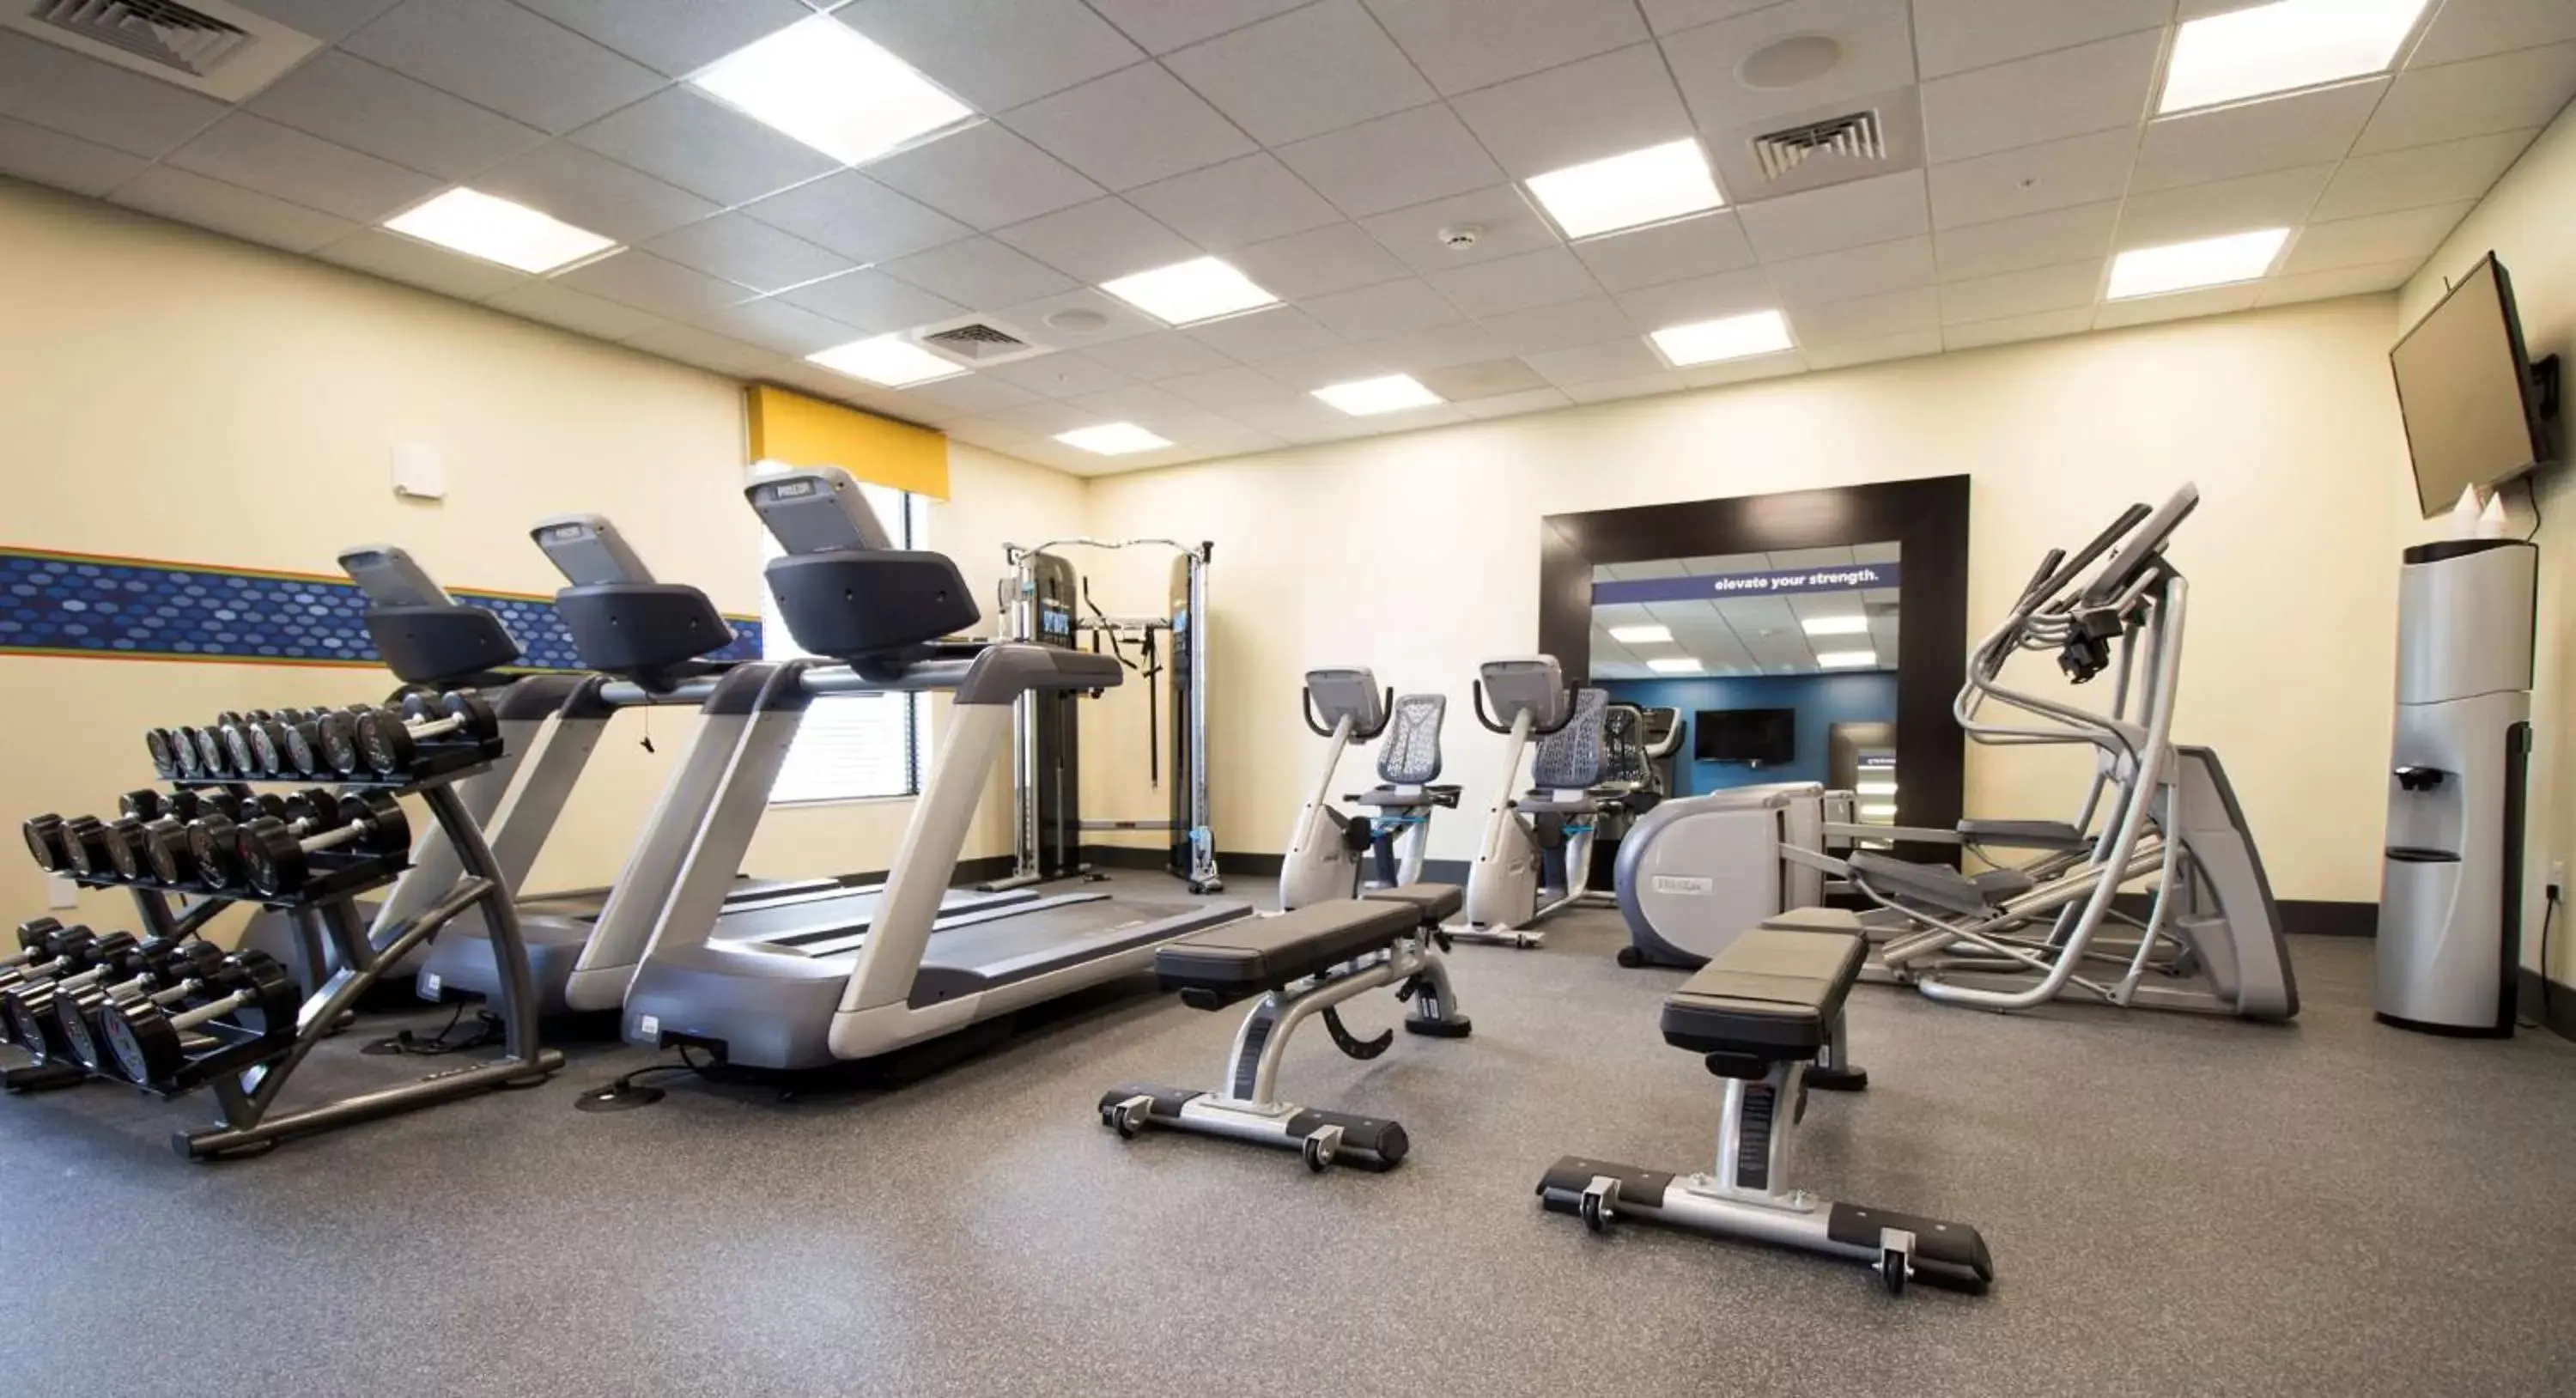 Fitness centre/facilities, Fitness Center/Facilities in Hampton Inn Decatur, Mt. Zion, IL